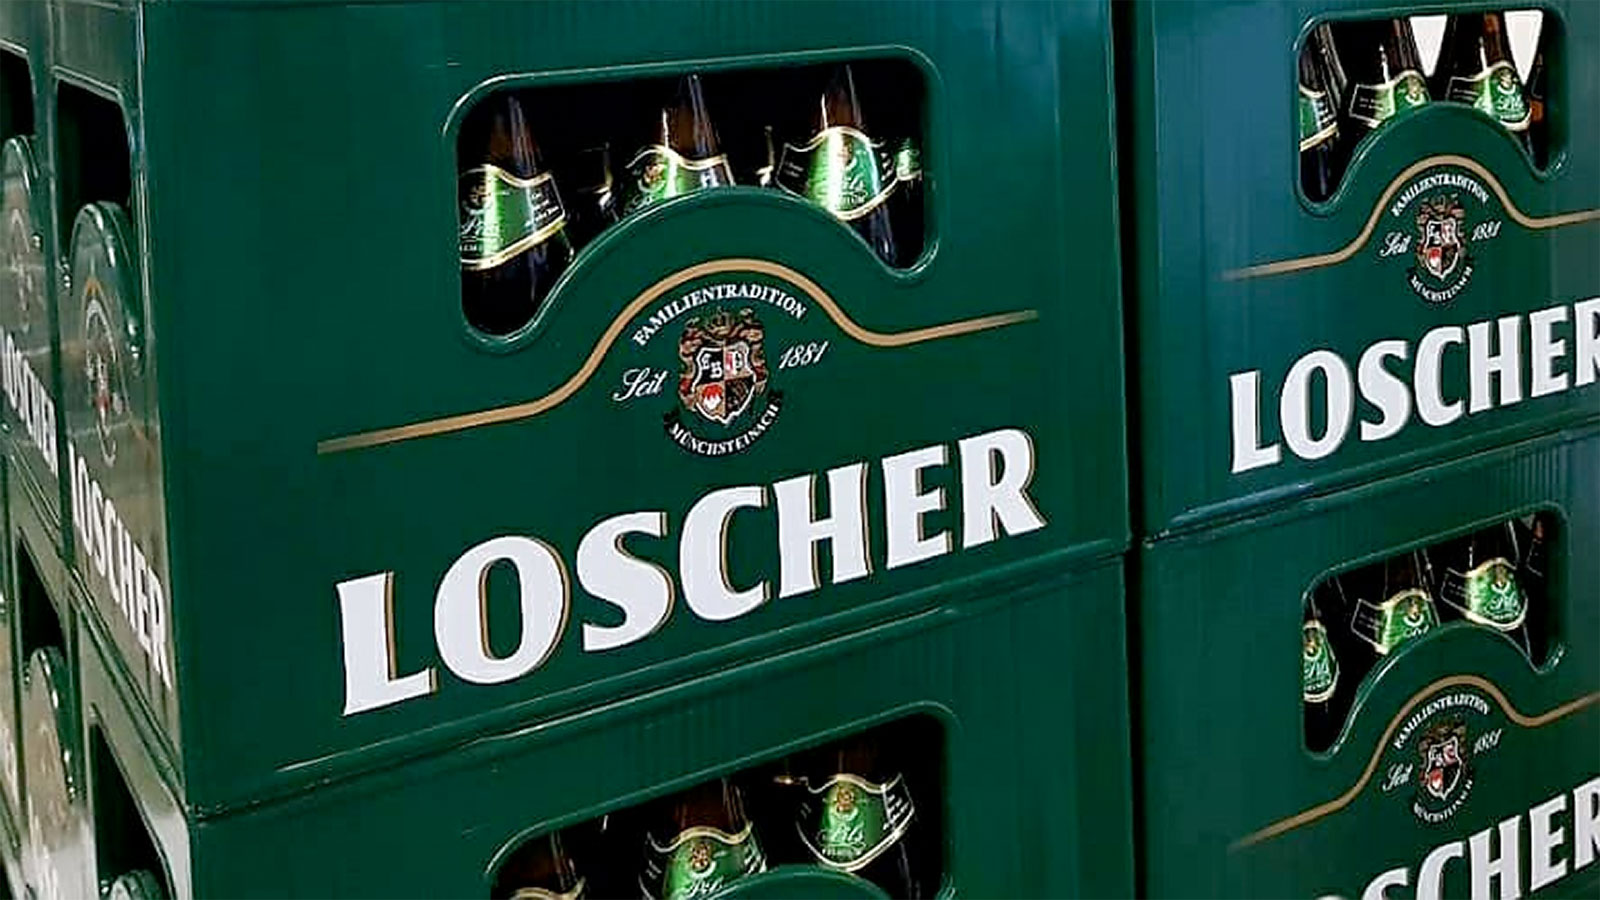 Brauerei Loscher Münchsteinach